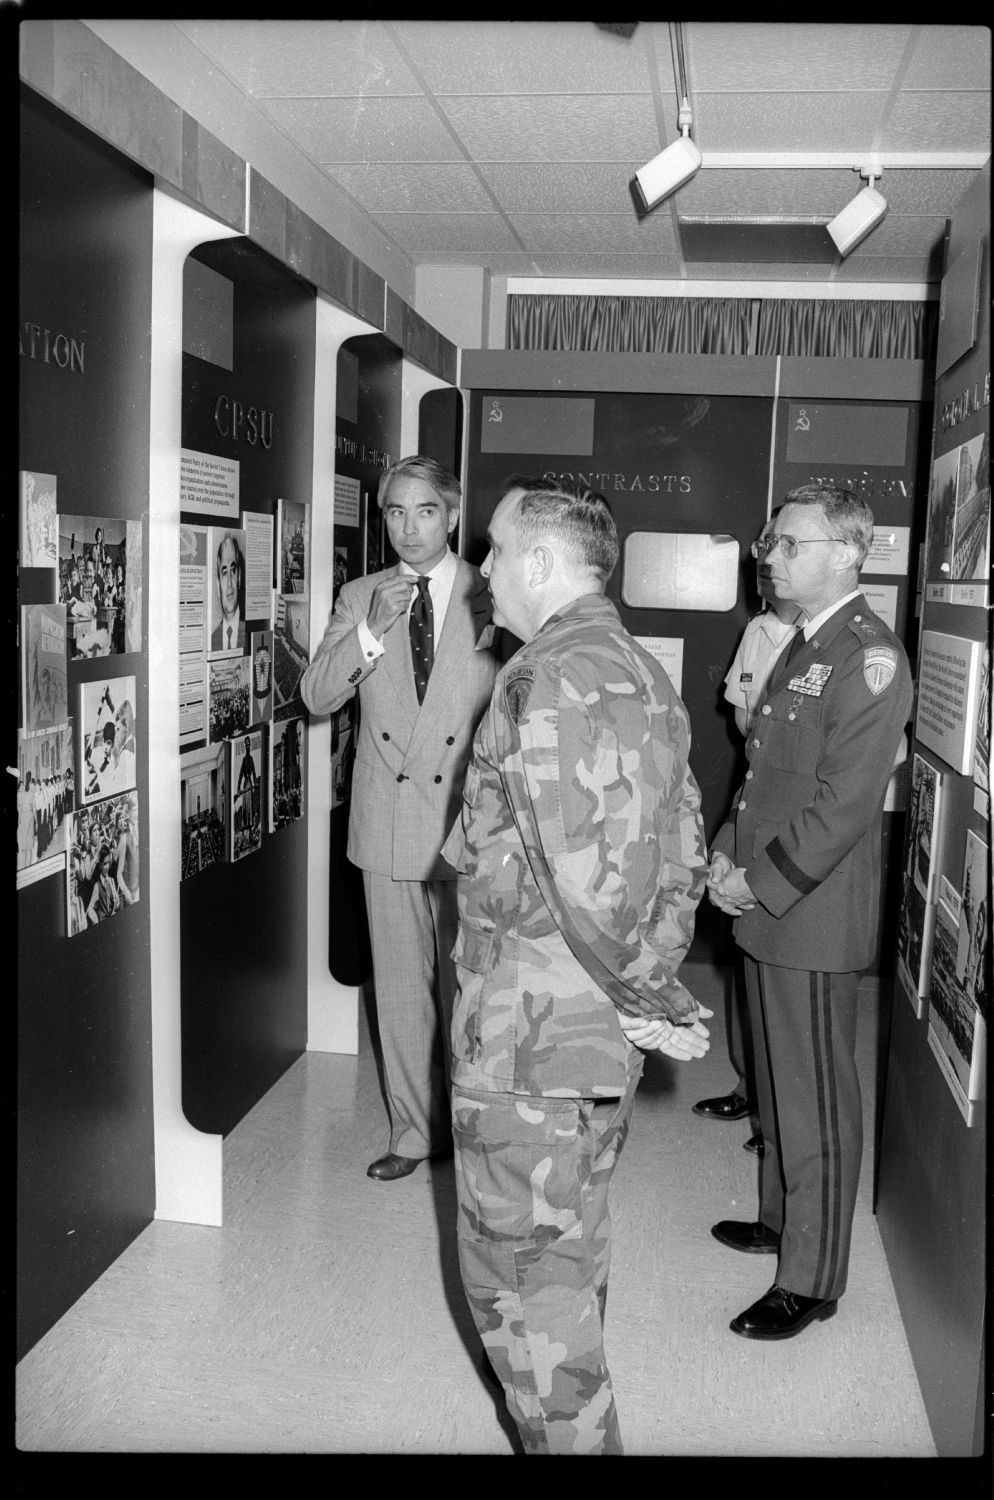 S/w-Fotografie: Eröffnung des Soviet Soldier Display im "McNair Museum" in Berlin-Lichterfelde